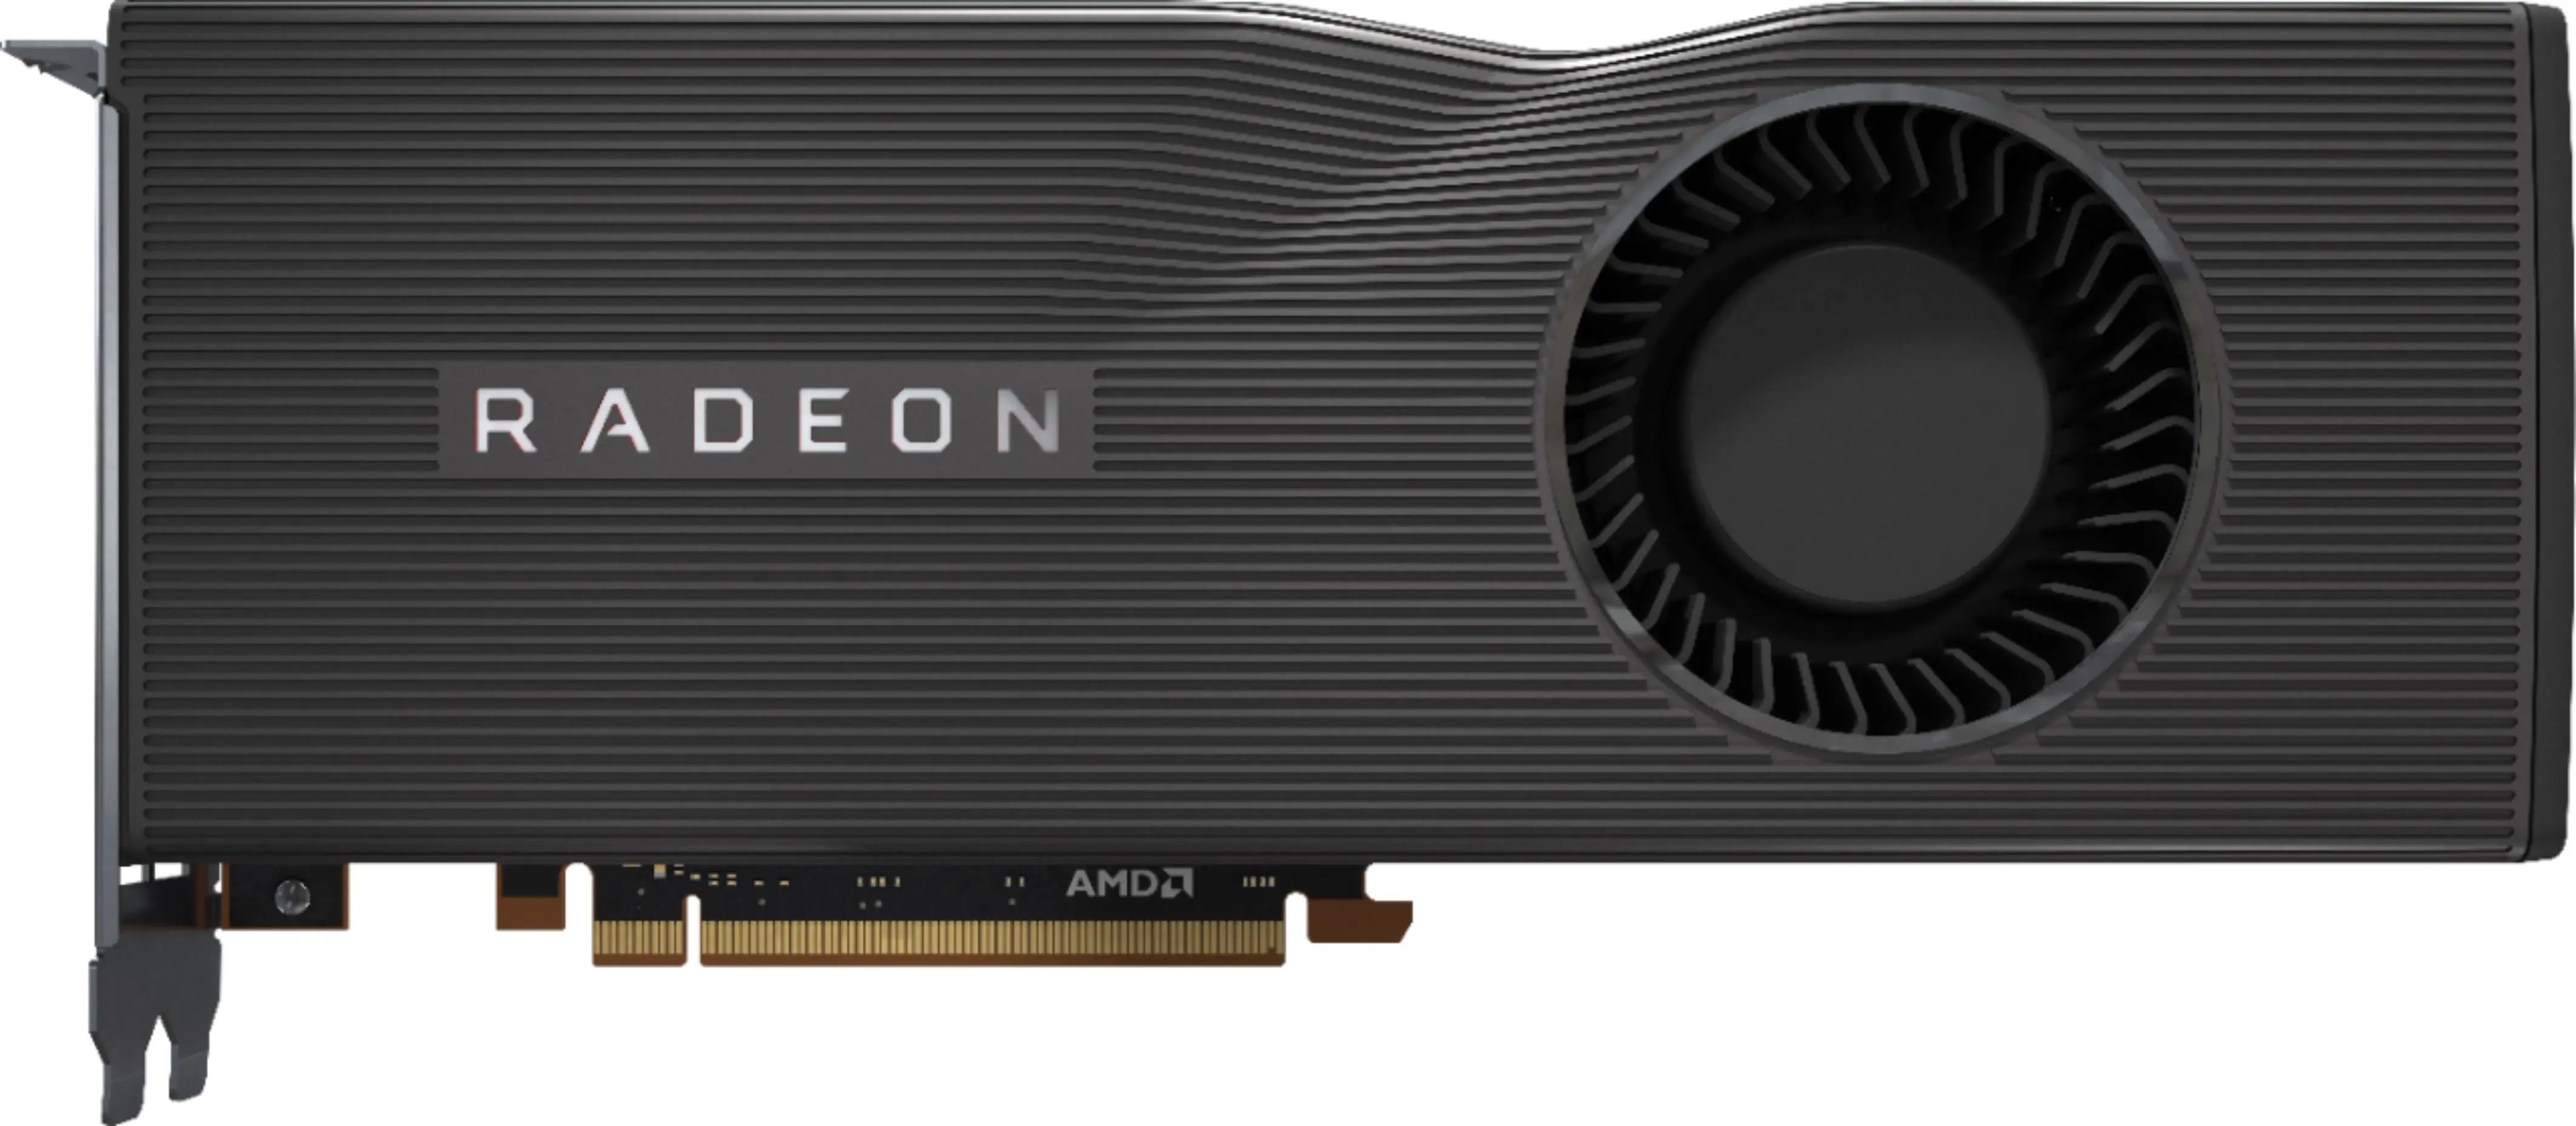 

ORIGINAL Sapphire AMD Radeon RX 5700 XT 8GB GDDR6 3xDP in Original Box